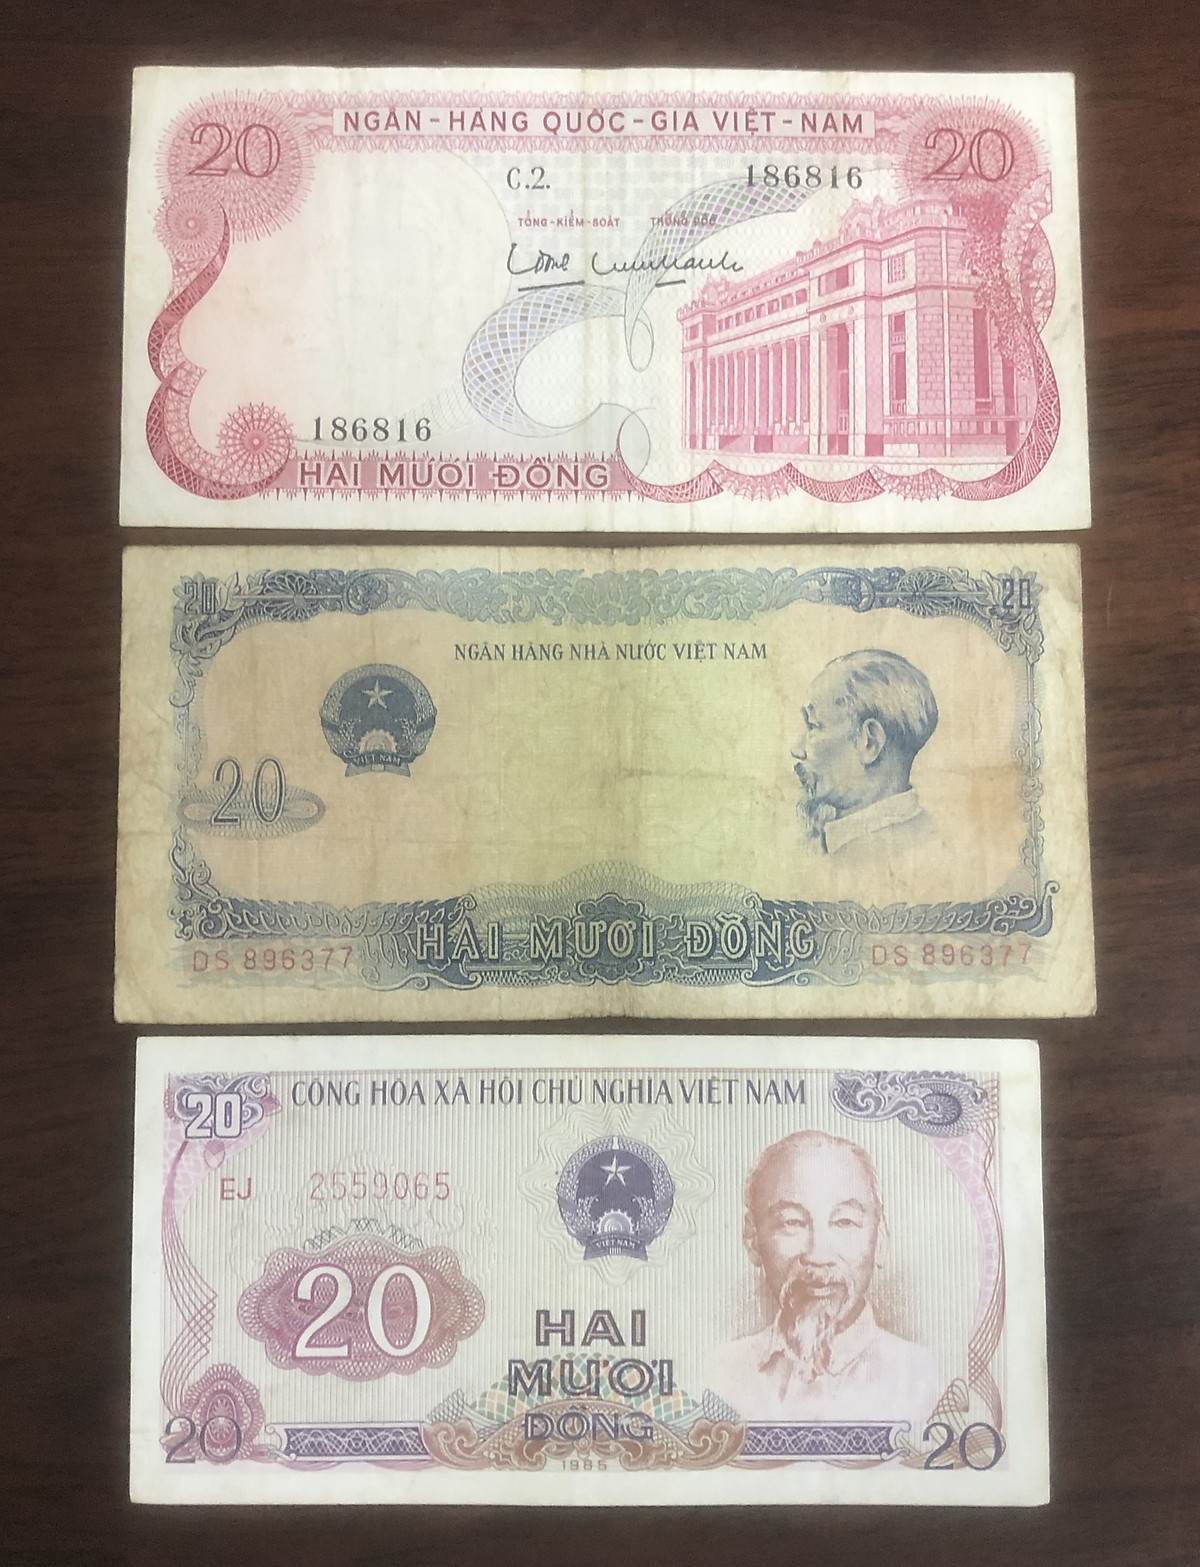 Tiền Việt Nam mệnh giá 20 đồng, 3 tờ phát hành khác giai đoạn - Chất lượng như hình, Tiền xưa thật 100%